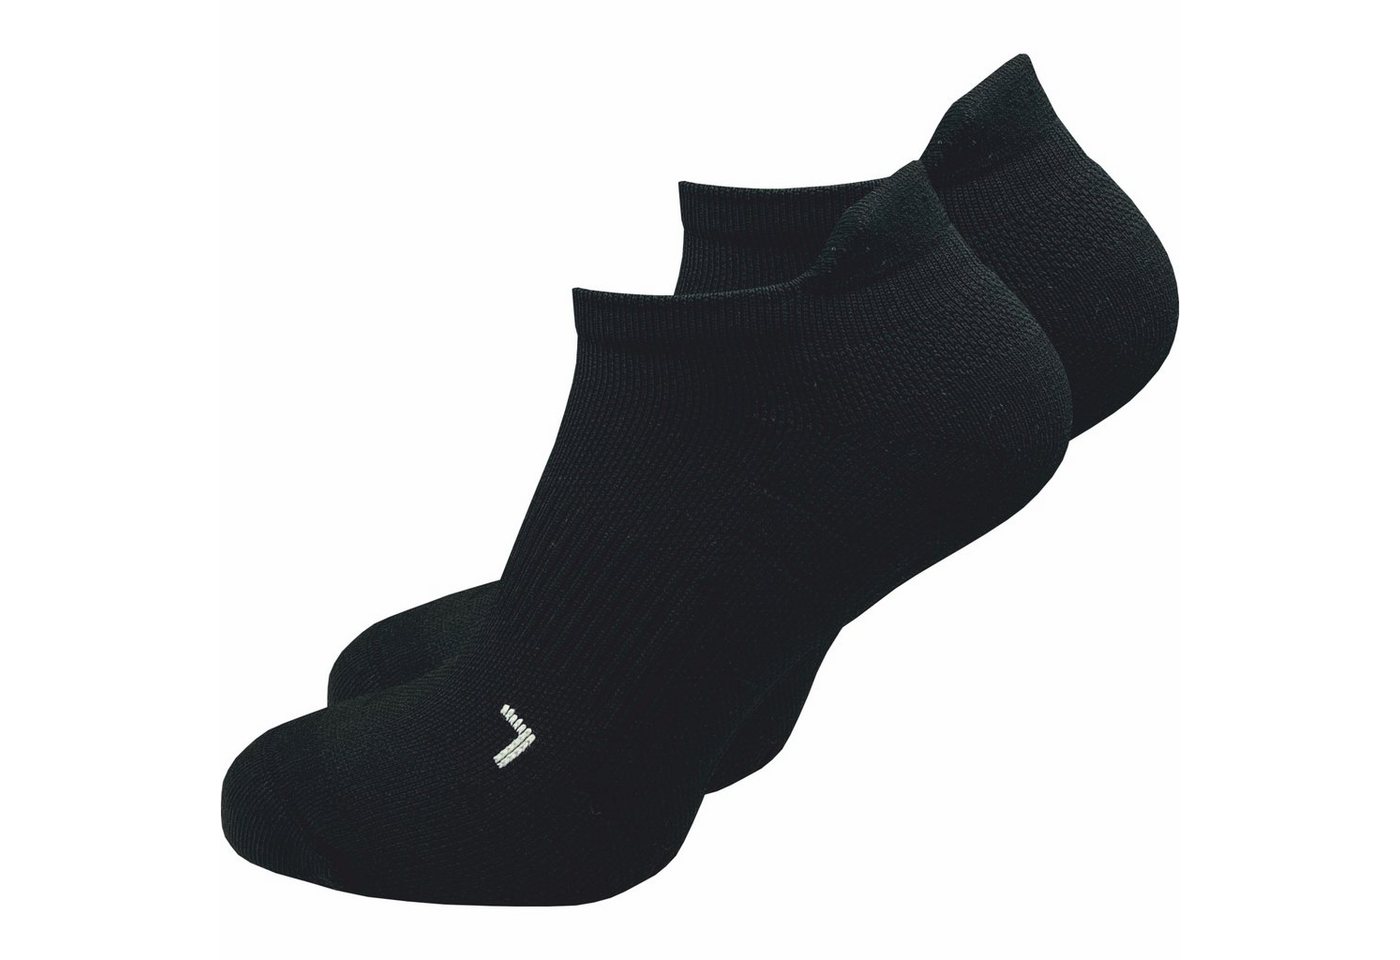 GAWILO Laufsocken (kurz) für Herren mit Kompression & Polsterung, bunt, schwarz & weiß  (5 Paar) Anatomisch korrekt für den linken und rechten Fuß gestrickt von GAWILO